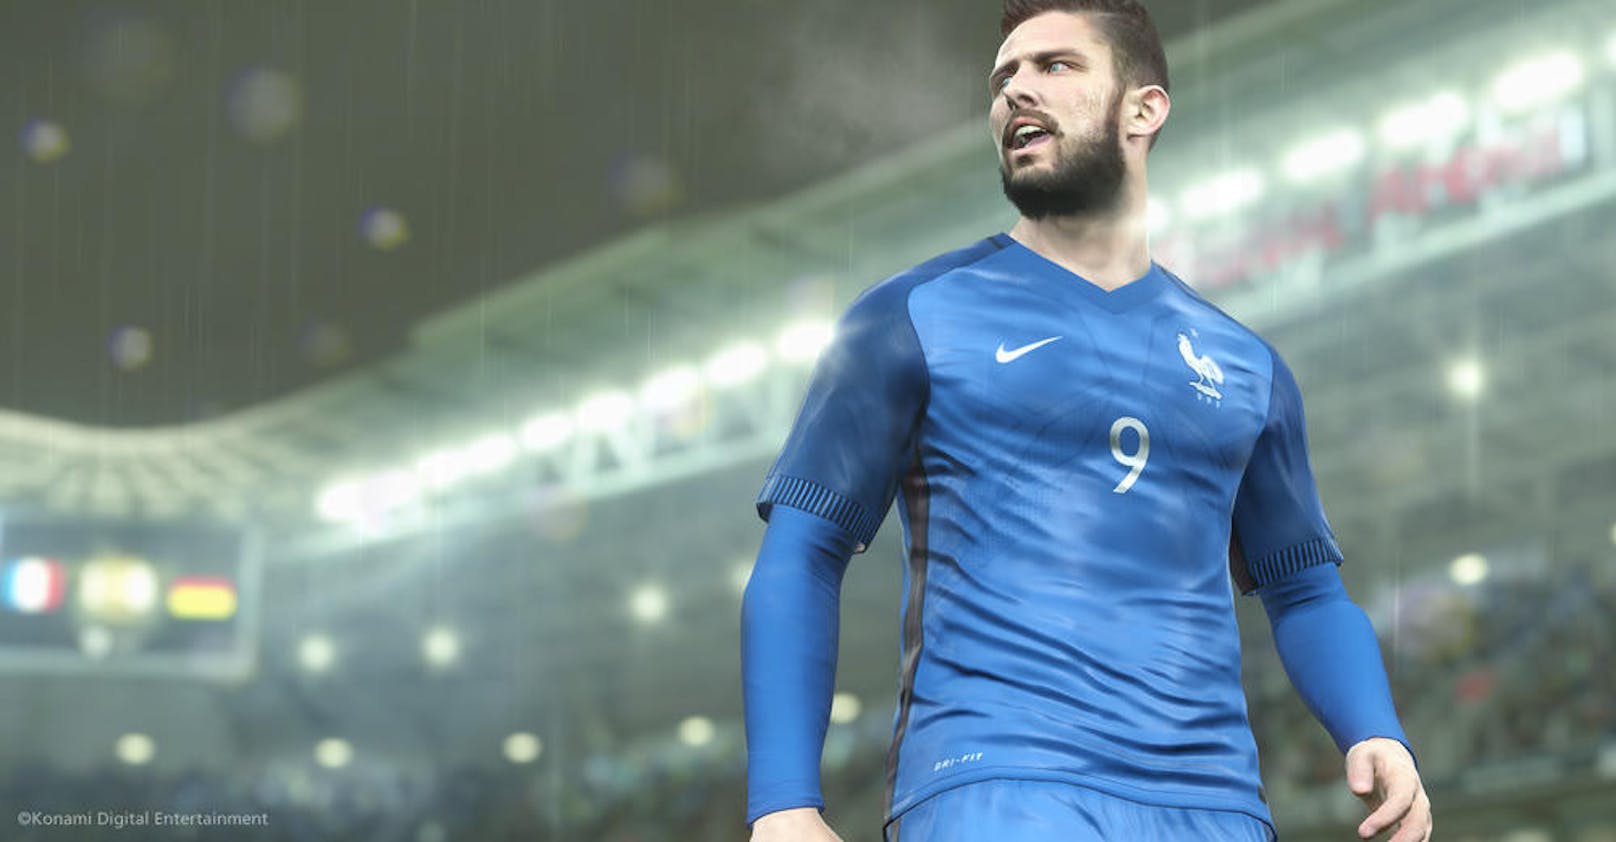 Eine altbekannte Schwäche sind bei Pro Evolution Soccer 2017 leider wieder die Lizenzen. Gerade europäische Teams laufen teilweise ohne die Originaltrikots auf und tragen Fantasienamen, das kann FIFA besser.